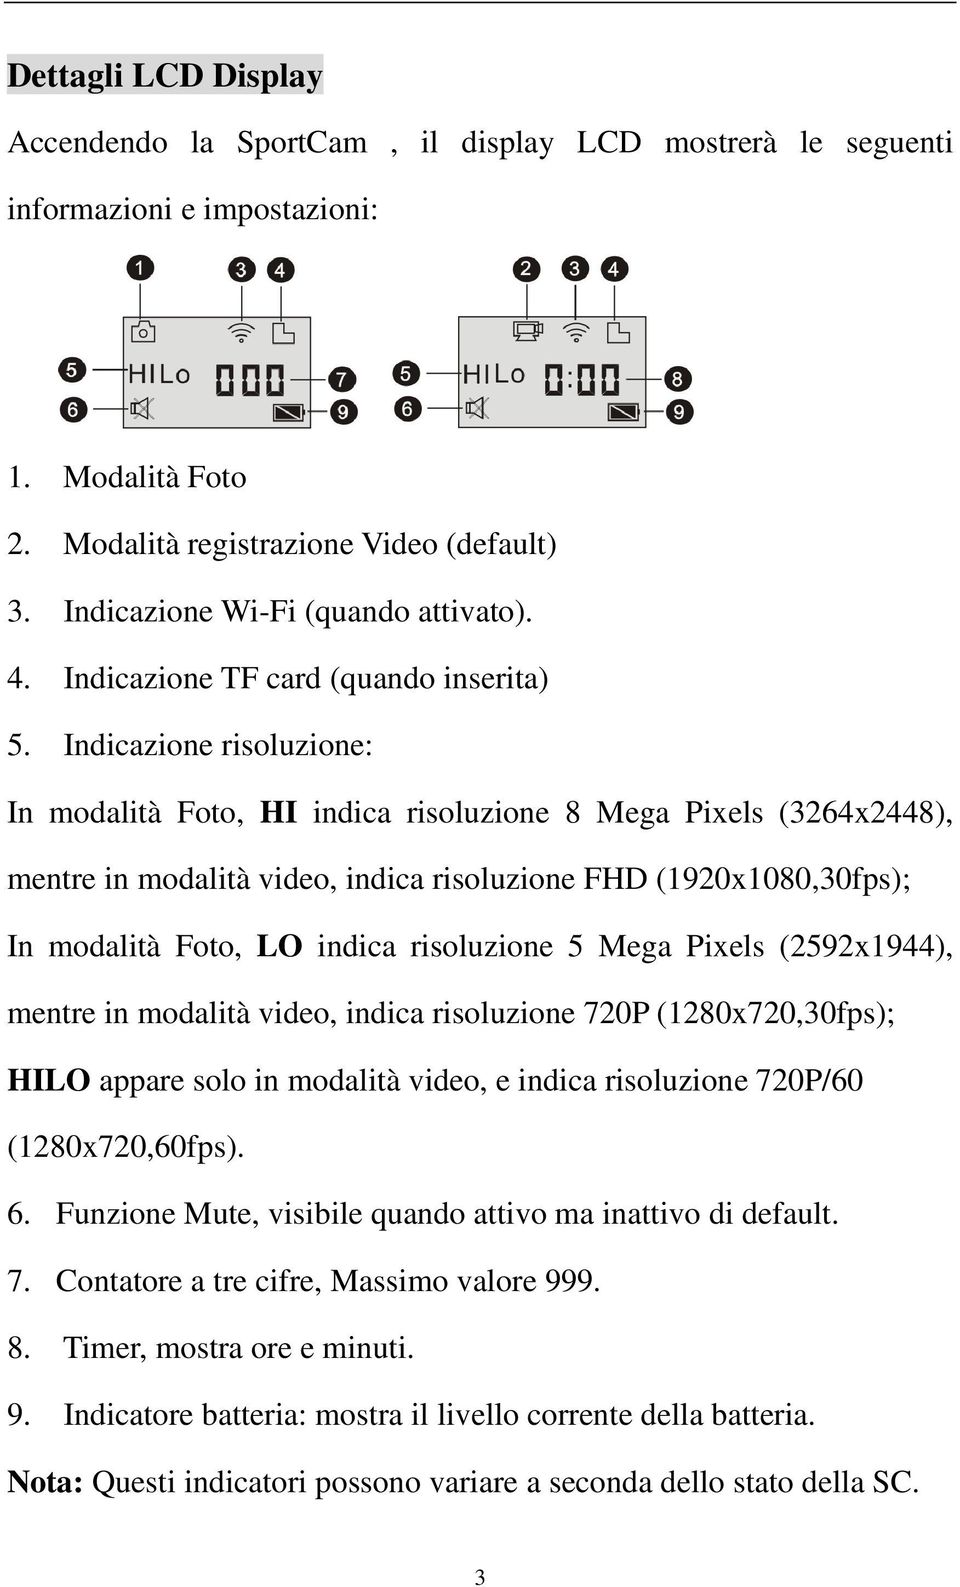 Indicazione risoluzione: In modalità Foto, HI indica risoluzione 8 Mega Pixels (3264x2448), mentre in modalità video, indica risoluzione FHD (1920x1080,30fps); In modalità Foto, LO indica risoluzione